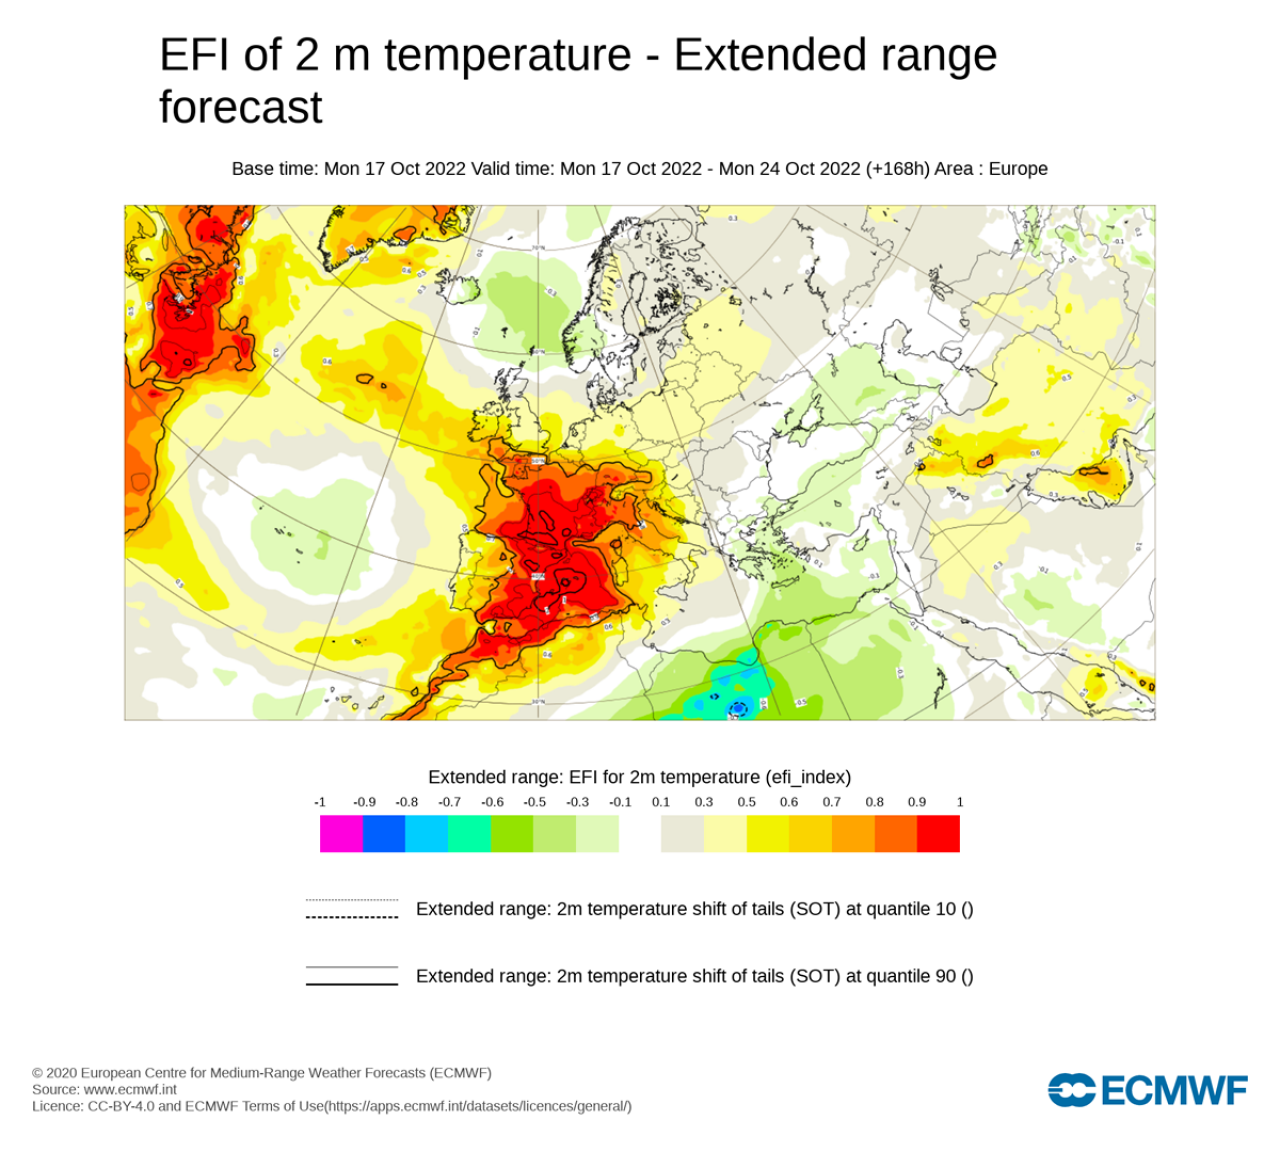 Extreme Forecast Index di Ecmwf mostra valori di temperature insolite o estreme avvicinandosi al valore 1